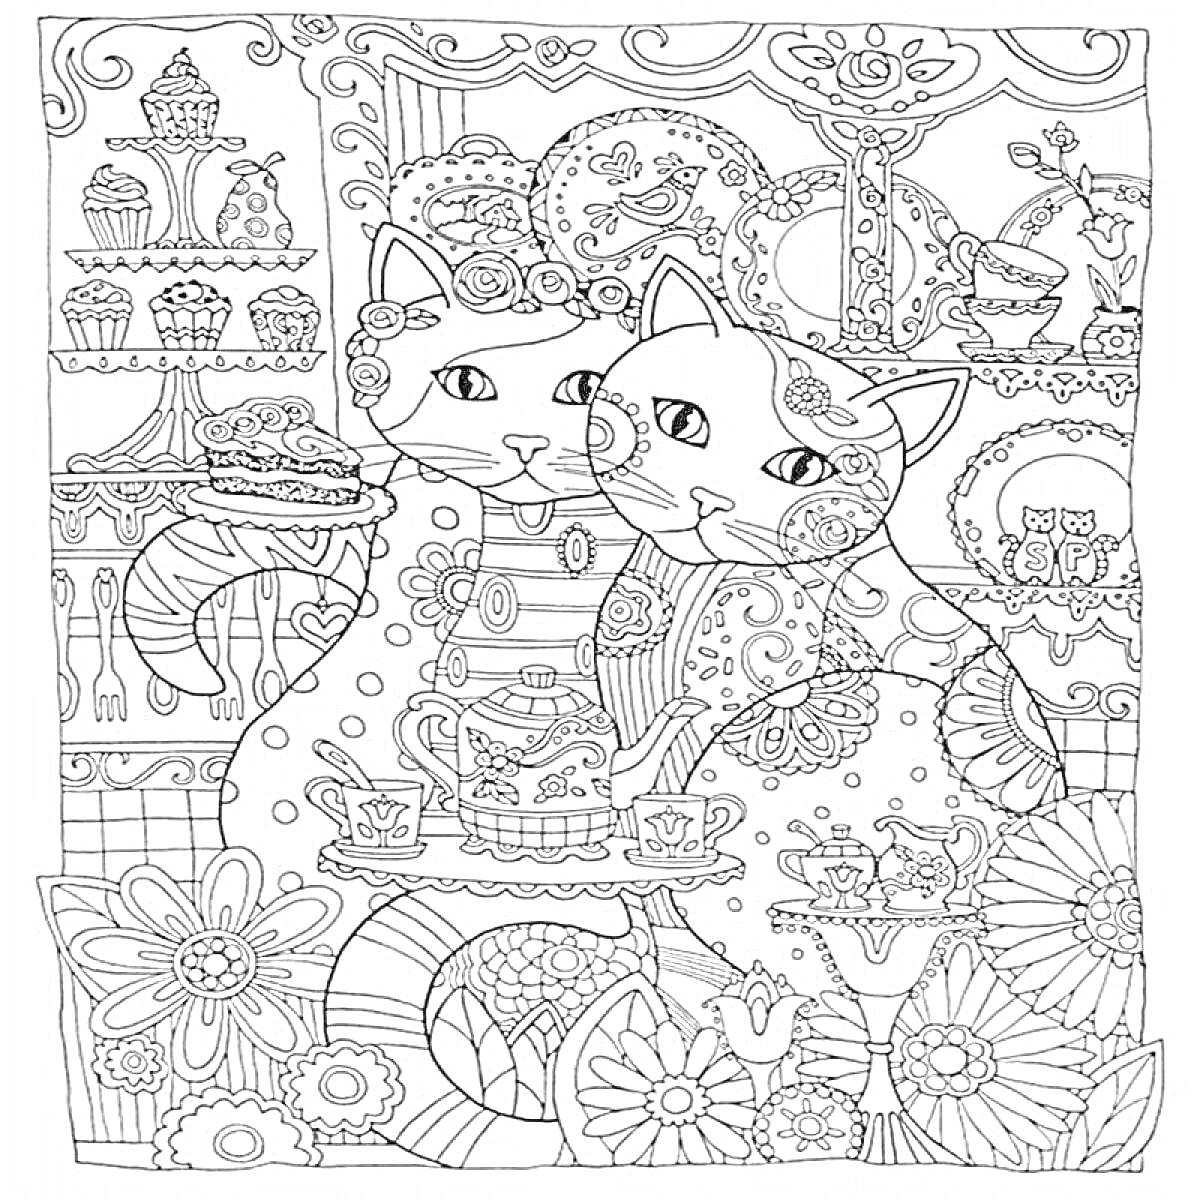 Две кошки с пирожным, в окружении цветочного орнамента и чайного сервиза